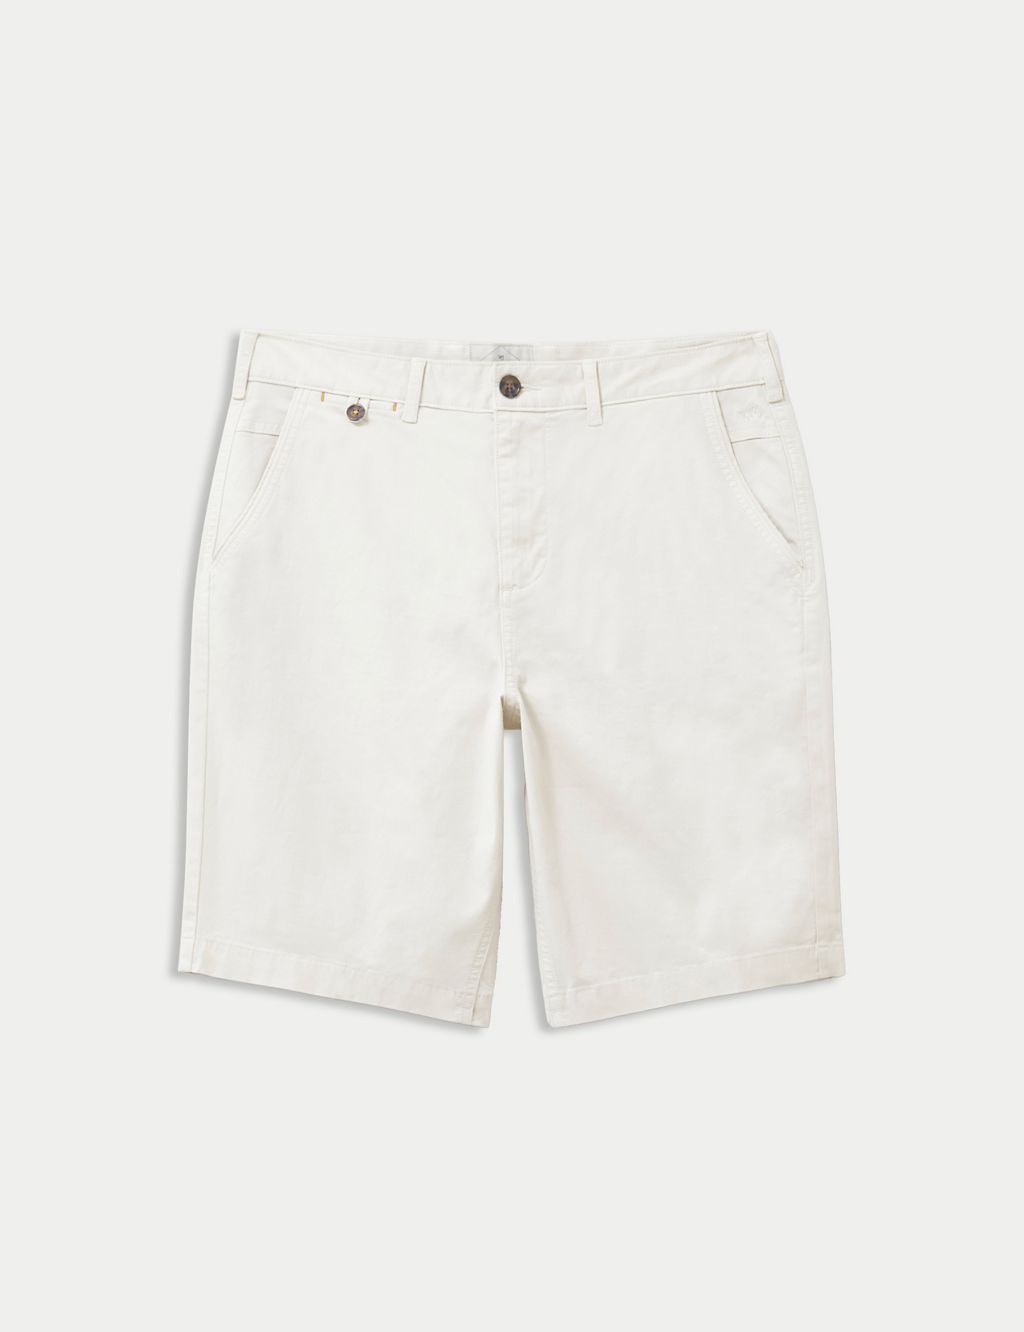 5 Pocket Chino Shorts 1 of 4